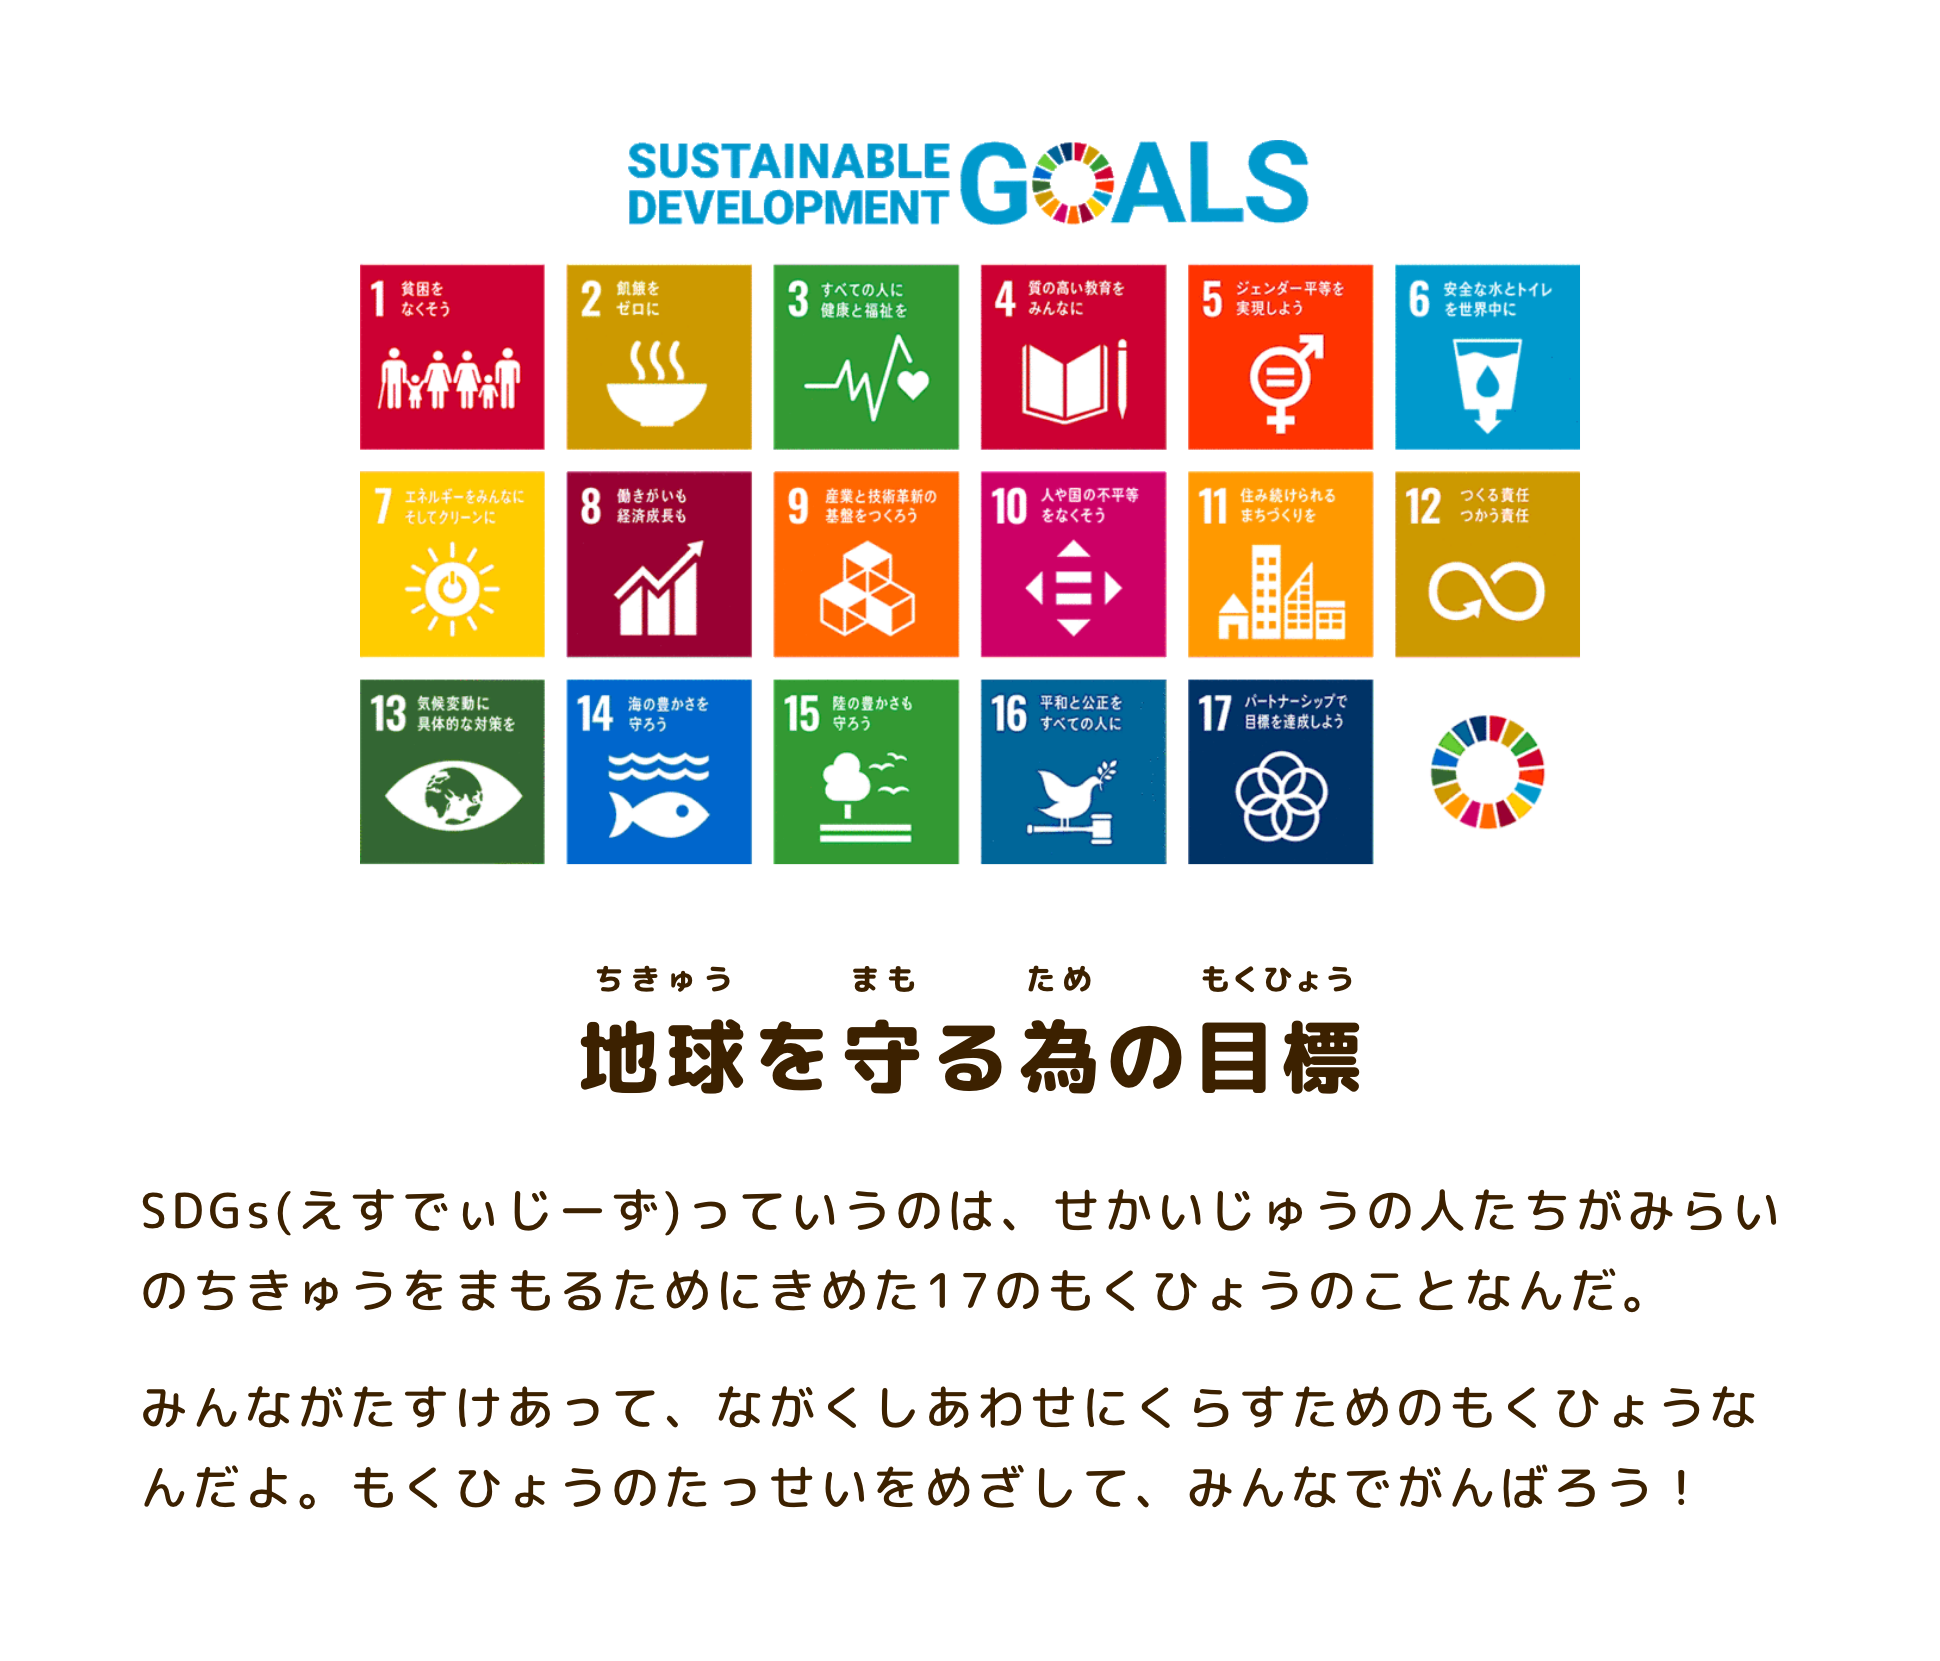 SDGsってなぁに？ SDGs（えすでぃじーず）っていうのは、せかいじゅうの人たちが みらいのちきゅうをまもるためにきめた 17のもくひょうのことなんだ。だれひとりとりのこさず、たすけあって、ながくしあわせにくらすための、わたしたちのもくひょうなんだよ。